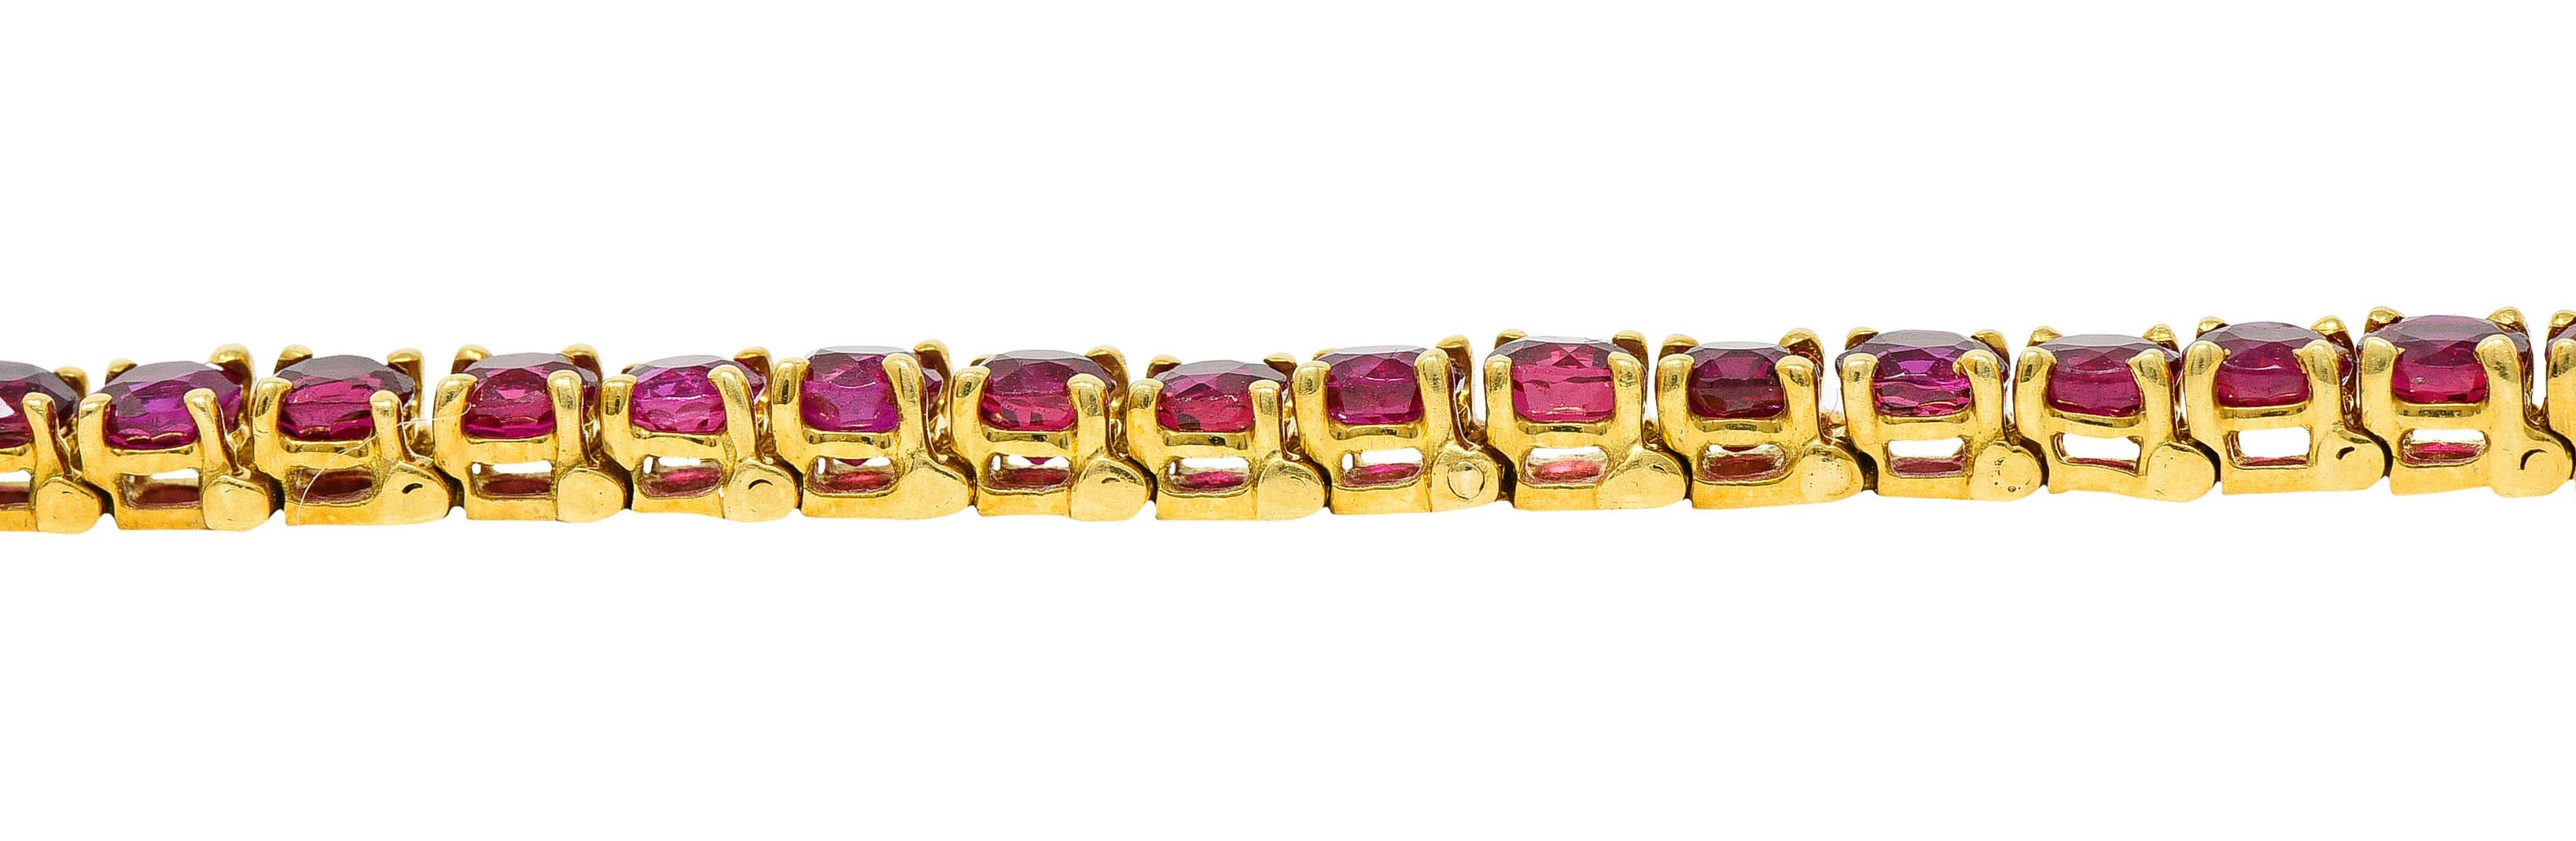 Van Cleef & Arpels 7.50 Carats Ruby 18 Karat Gold Line Bracelet 1970's Vintage 2